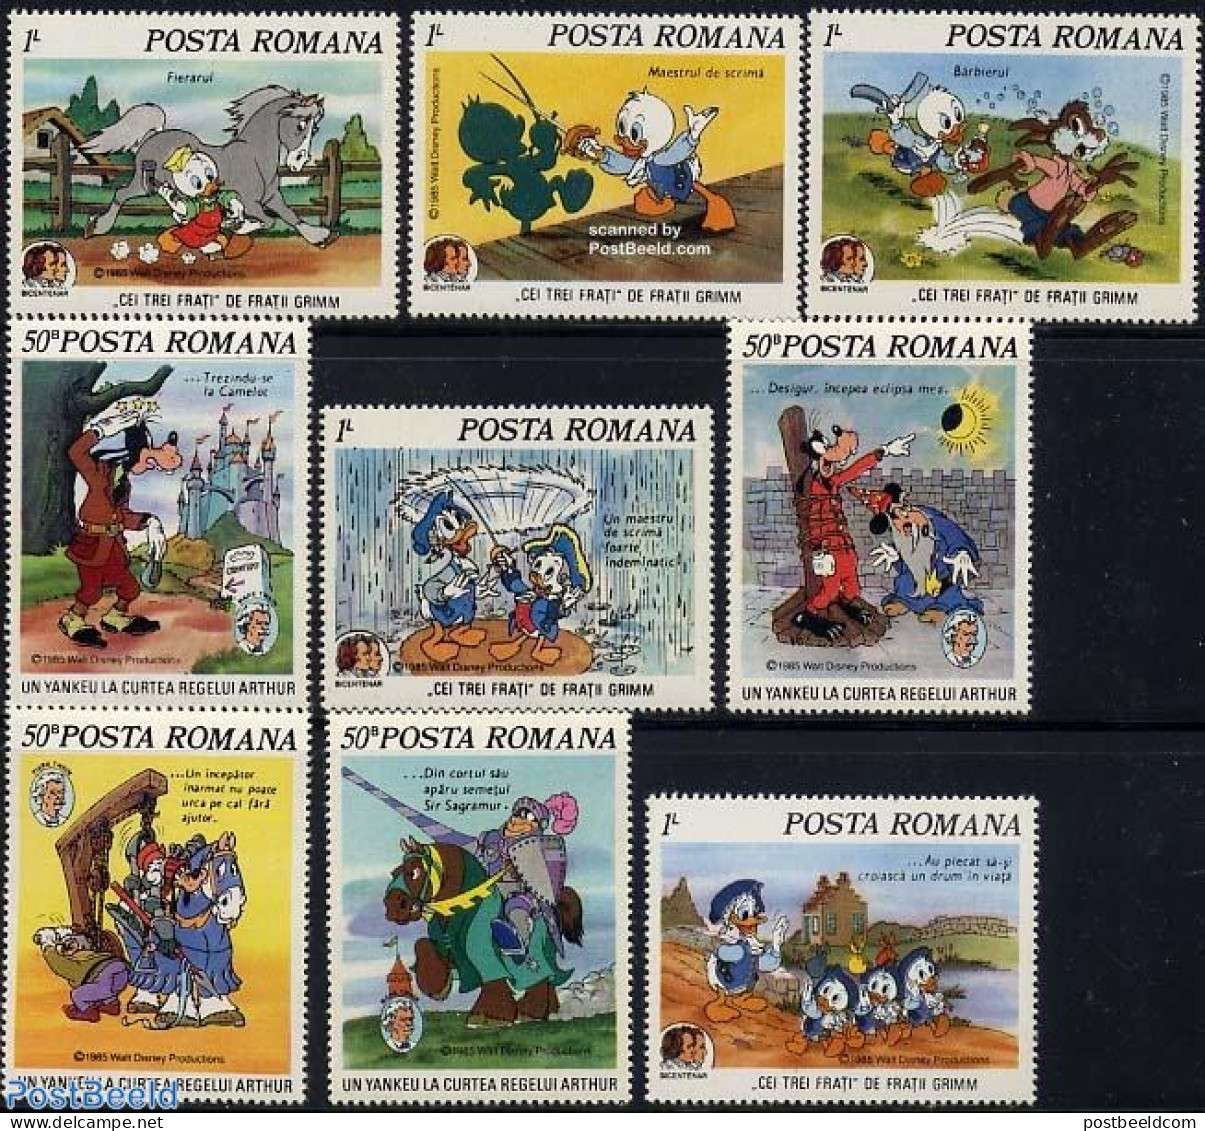 Romania 1985 Mark Twain, Disney 9v, Mint NH, History - Nature - Knights - Horses - Art - Authors - Disney - Nuevos